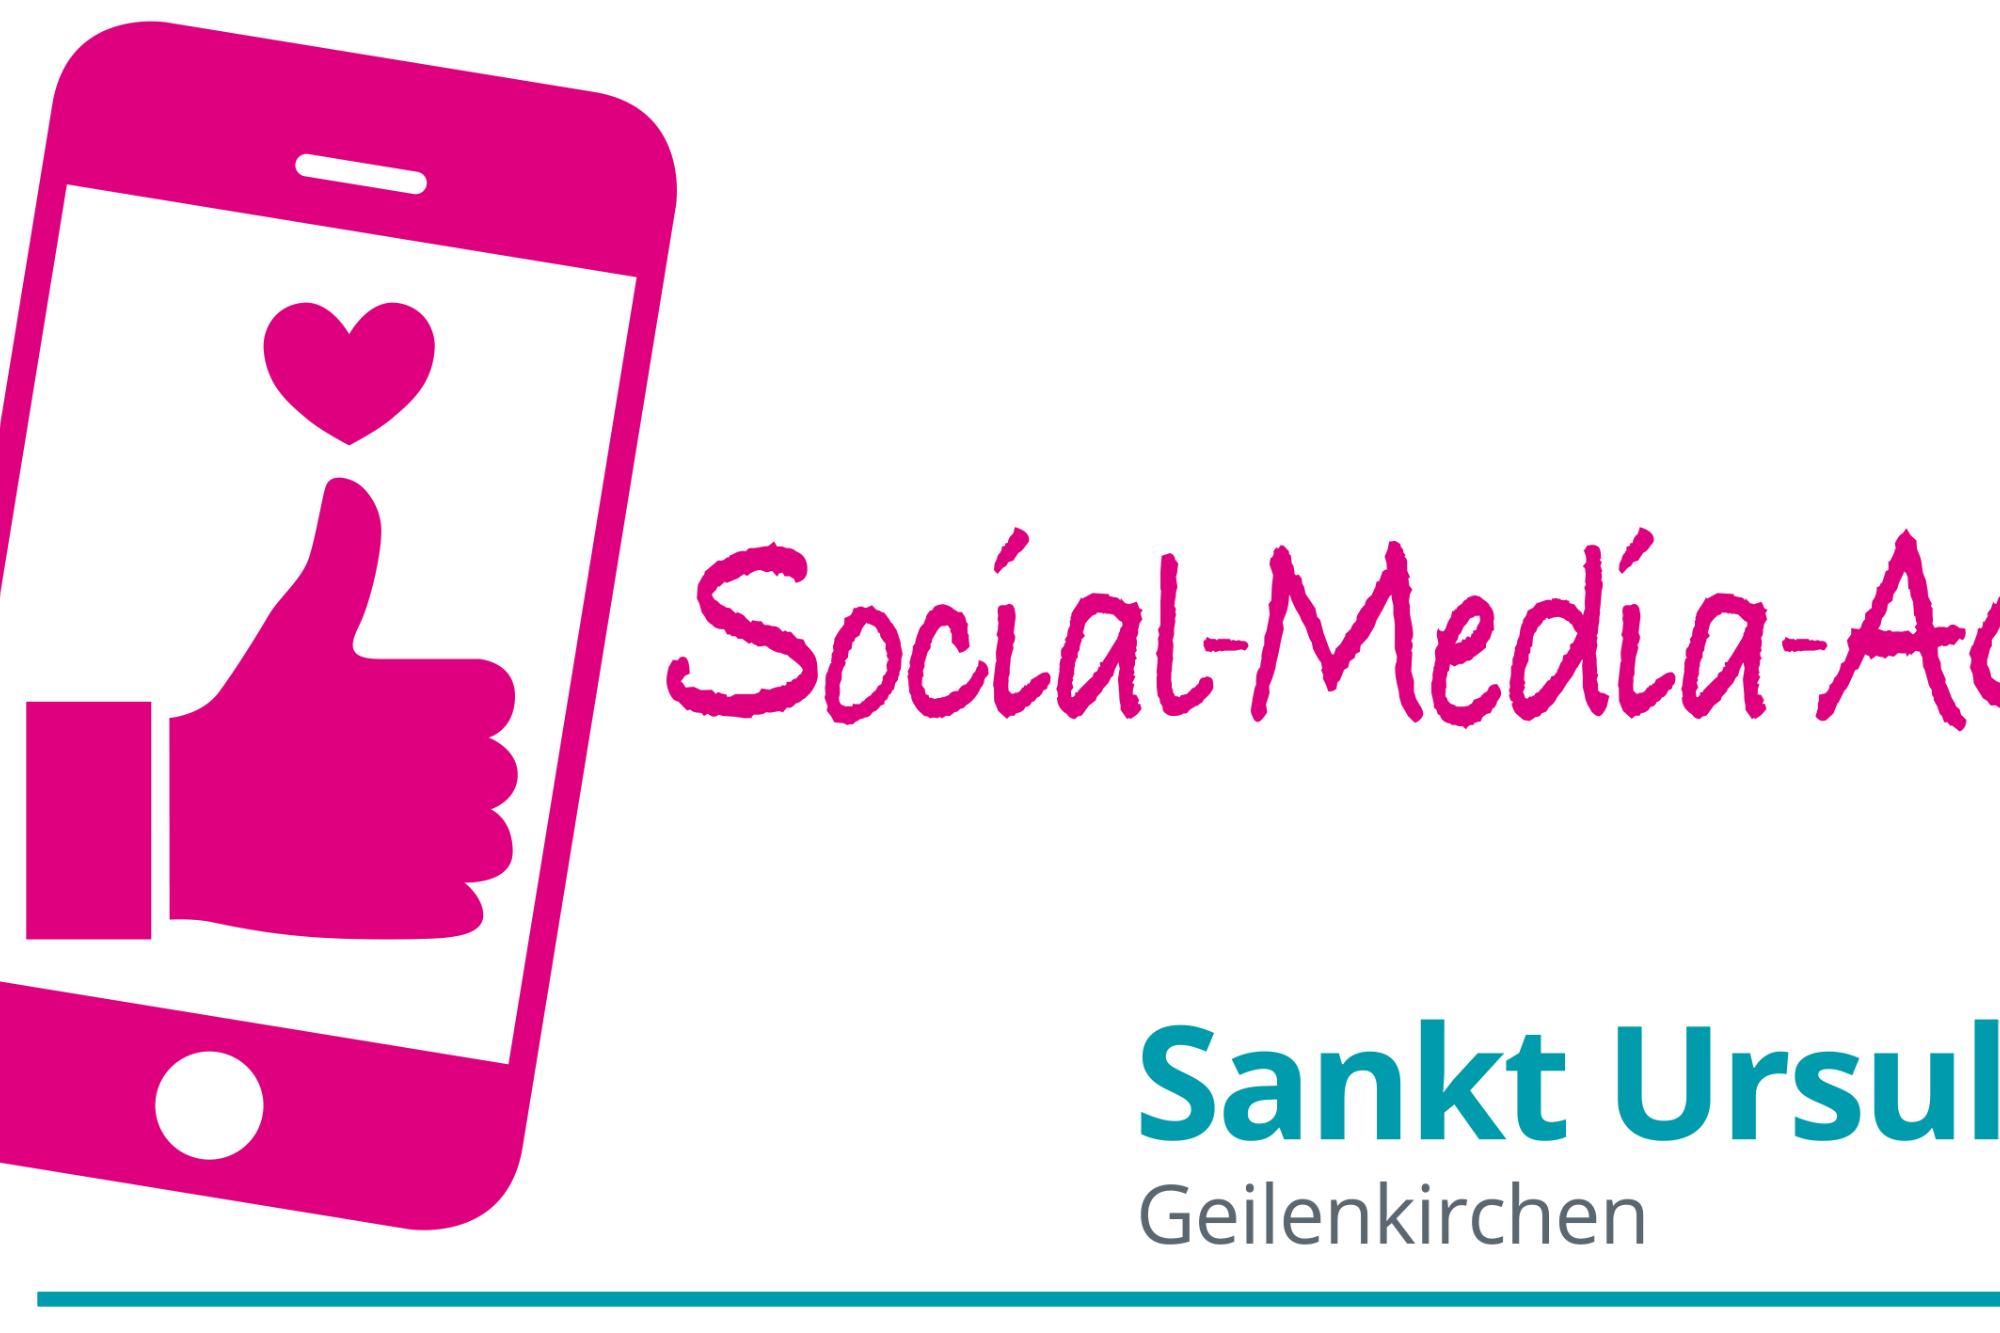 Logo Social-Media-AG